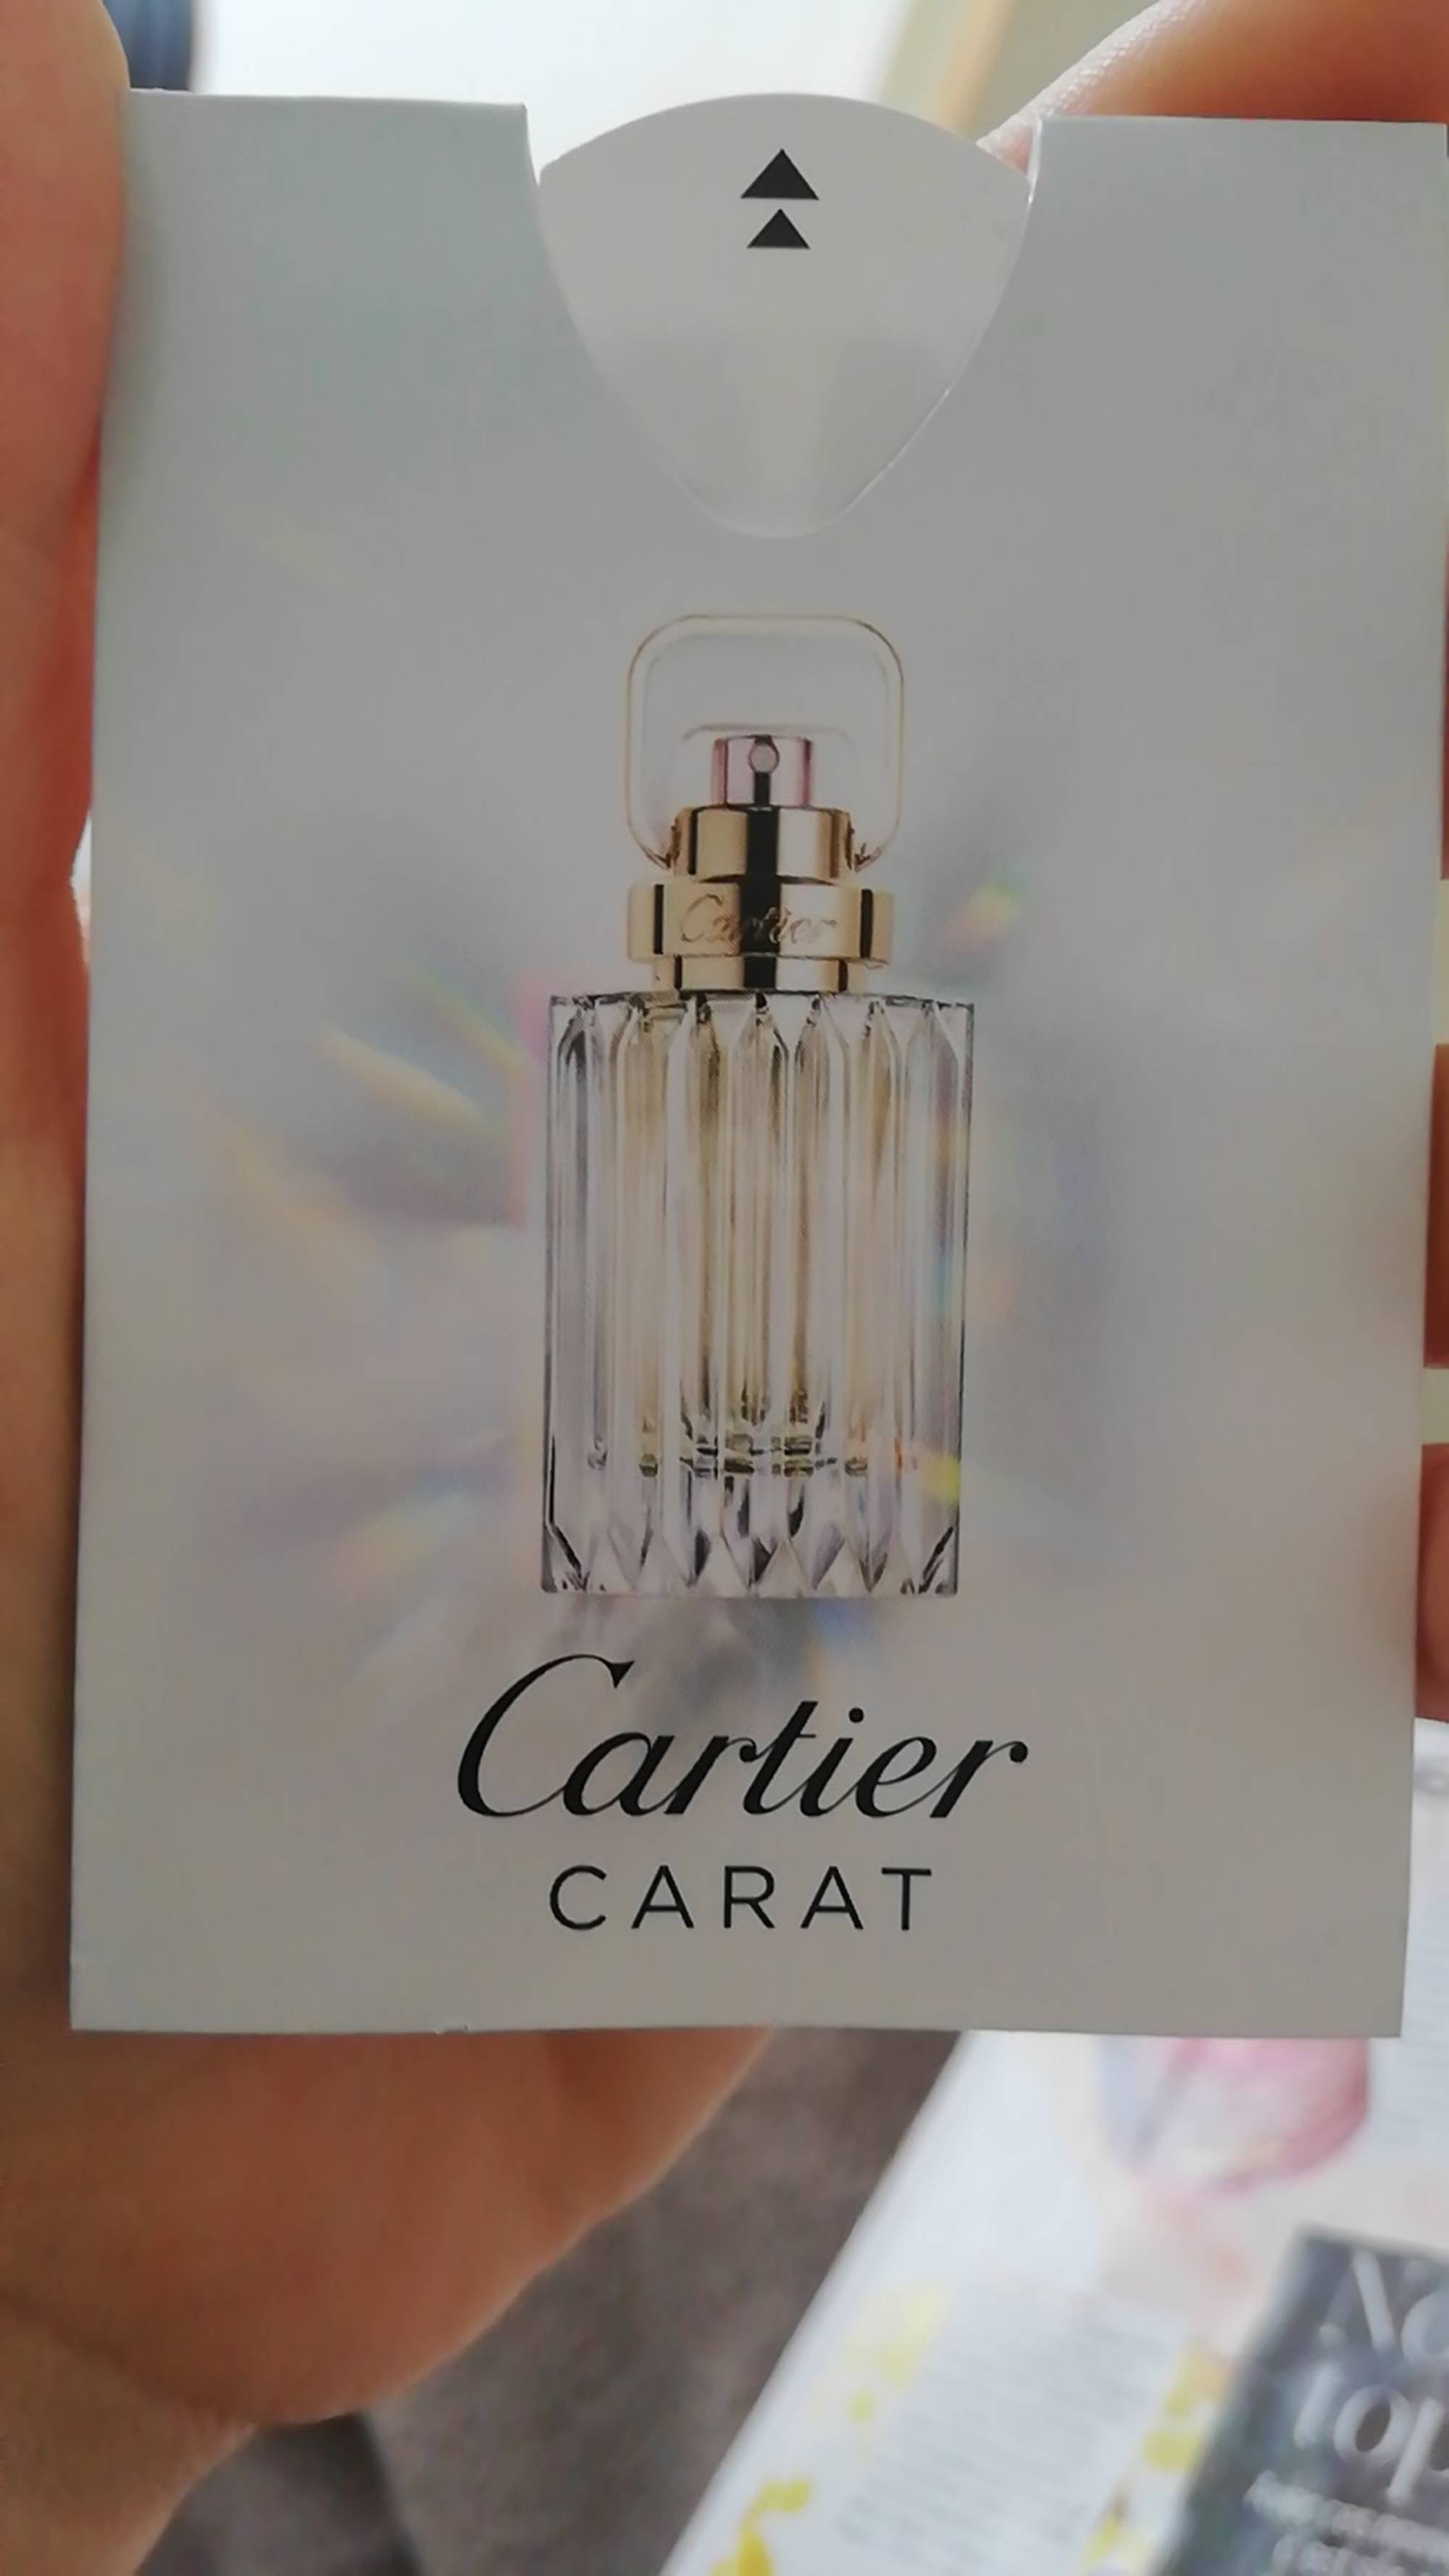 CARTIER - Carat - Eau de parfum